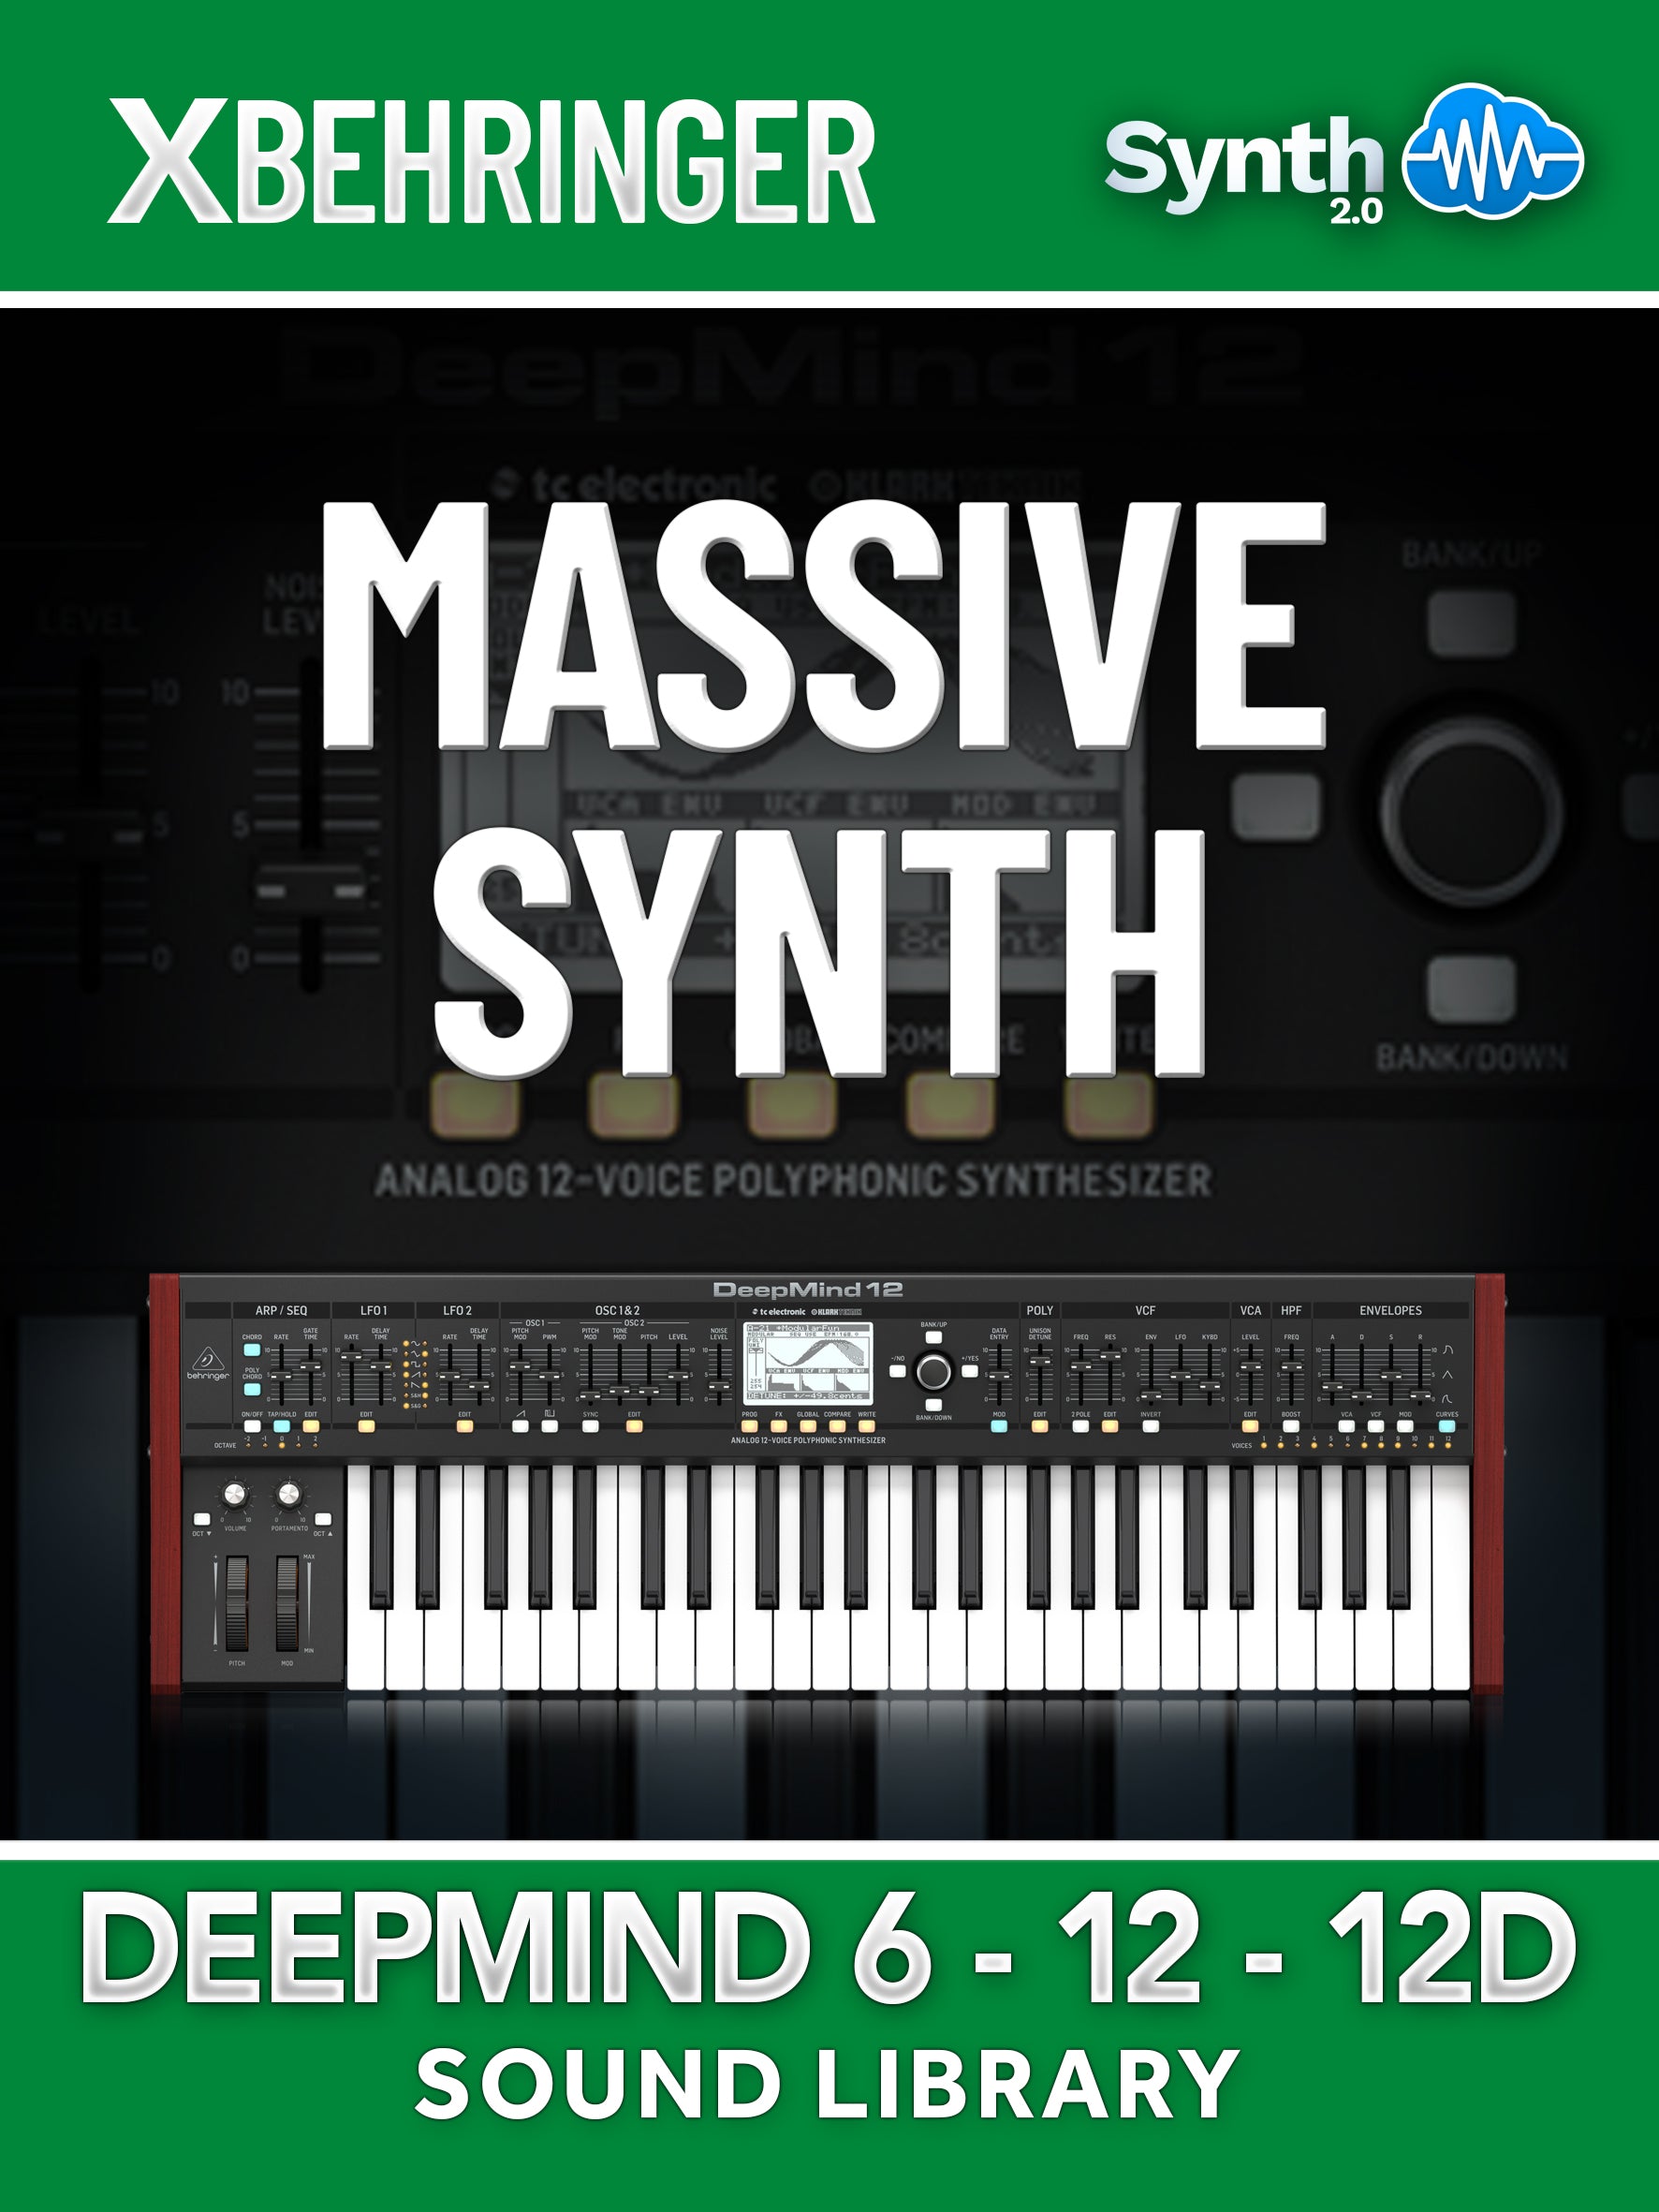 LDX318 - ( Bundle ) - Massive Synth + Producer Evolution V2 - Behringer Deepmind 6 / 12 / 12D